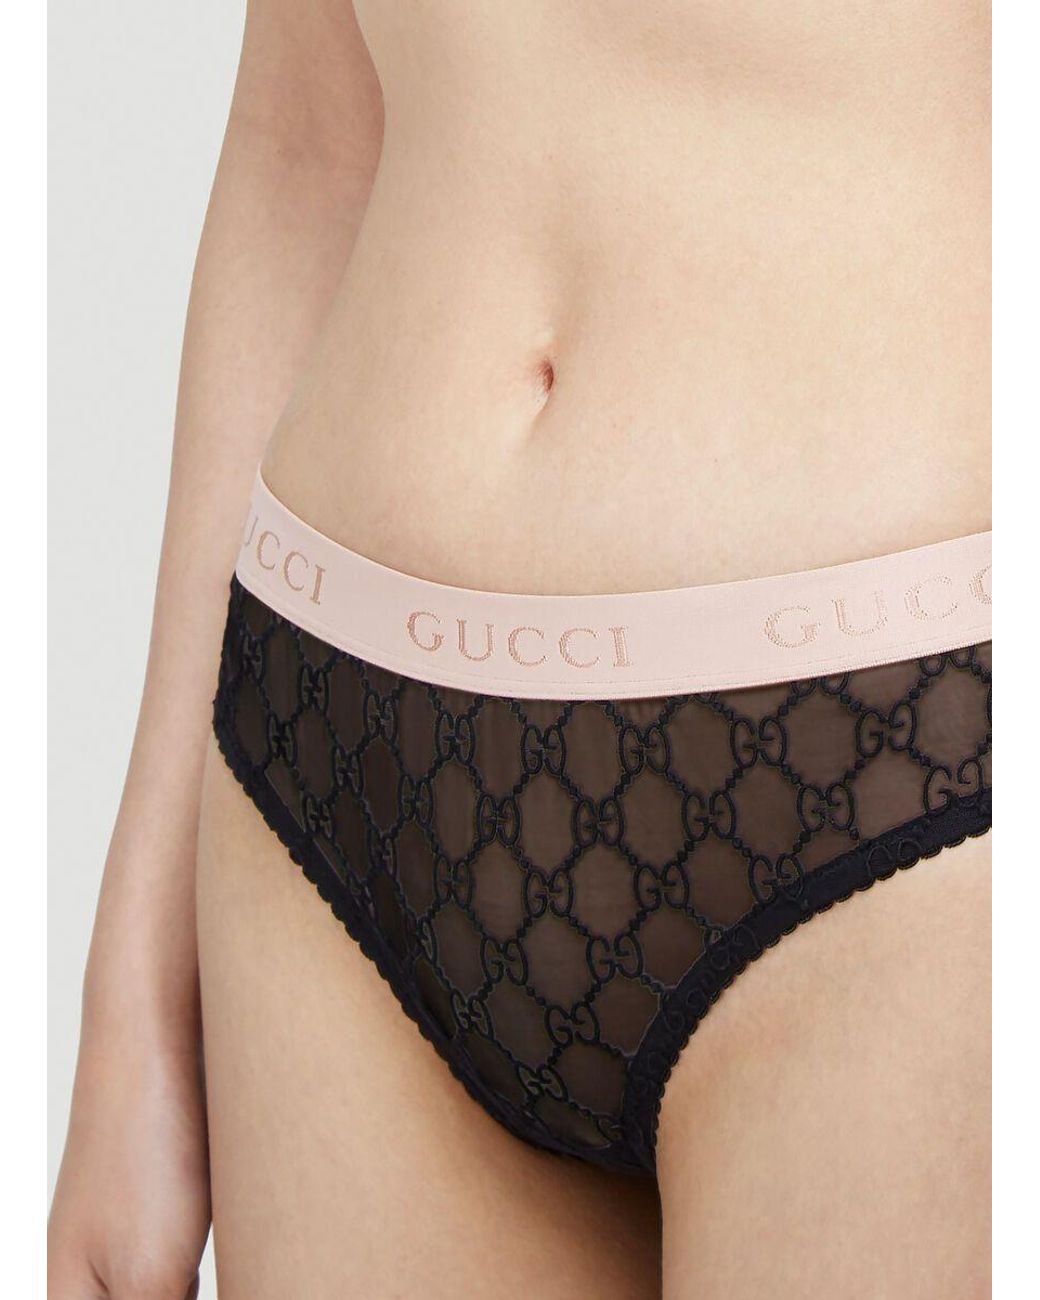 Gucci Underwear Black